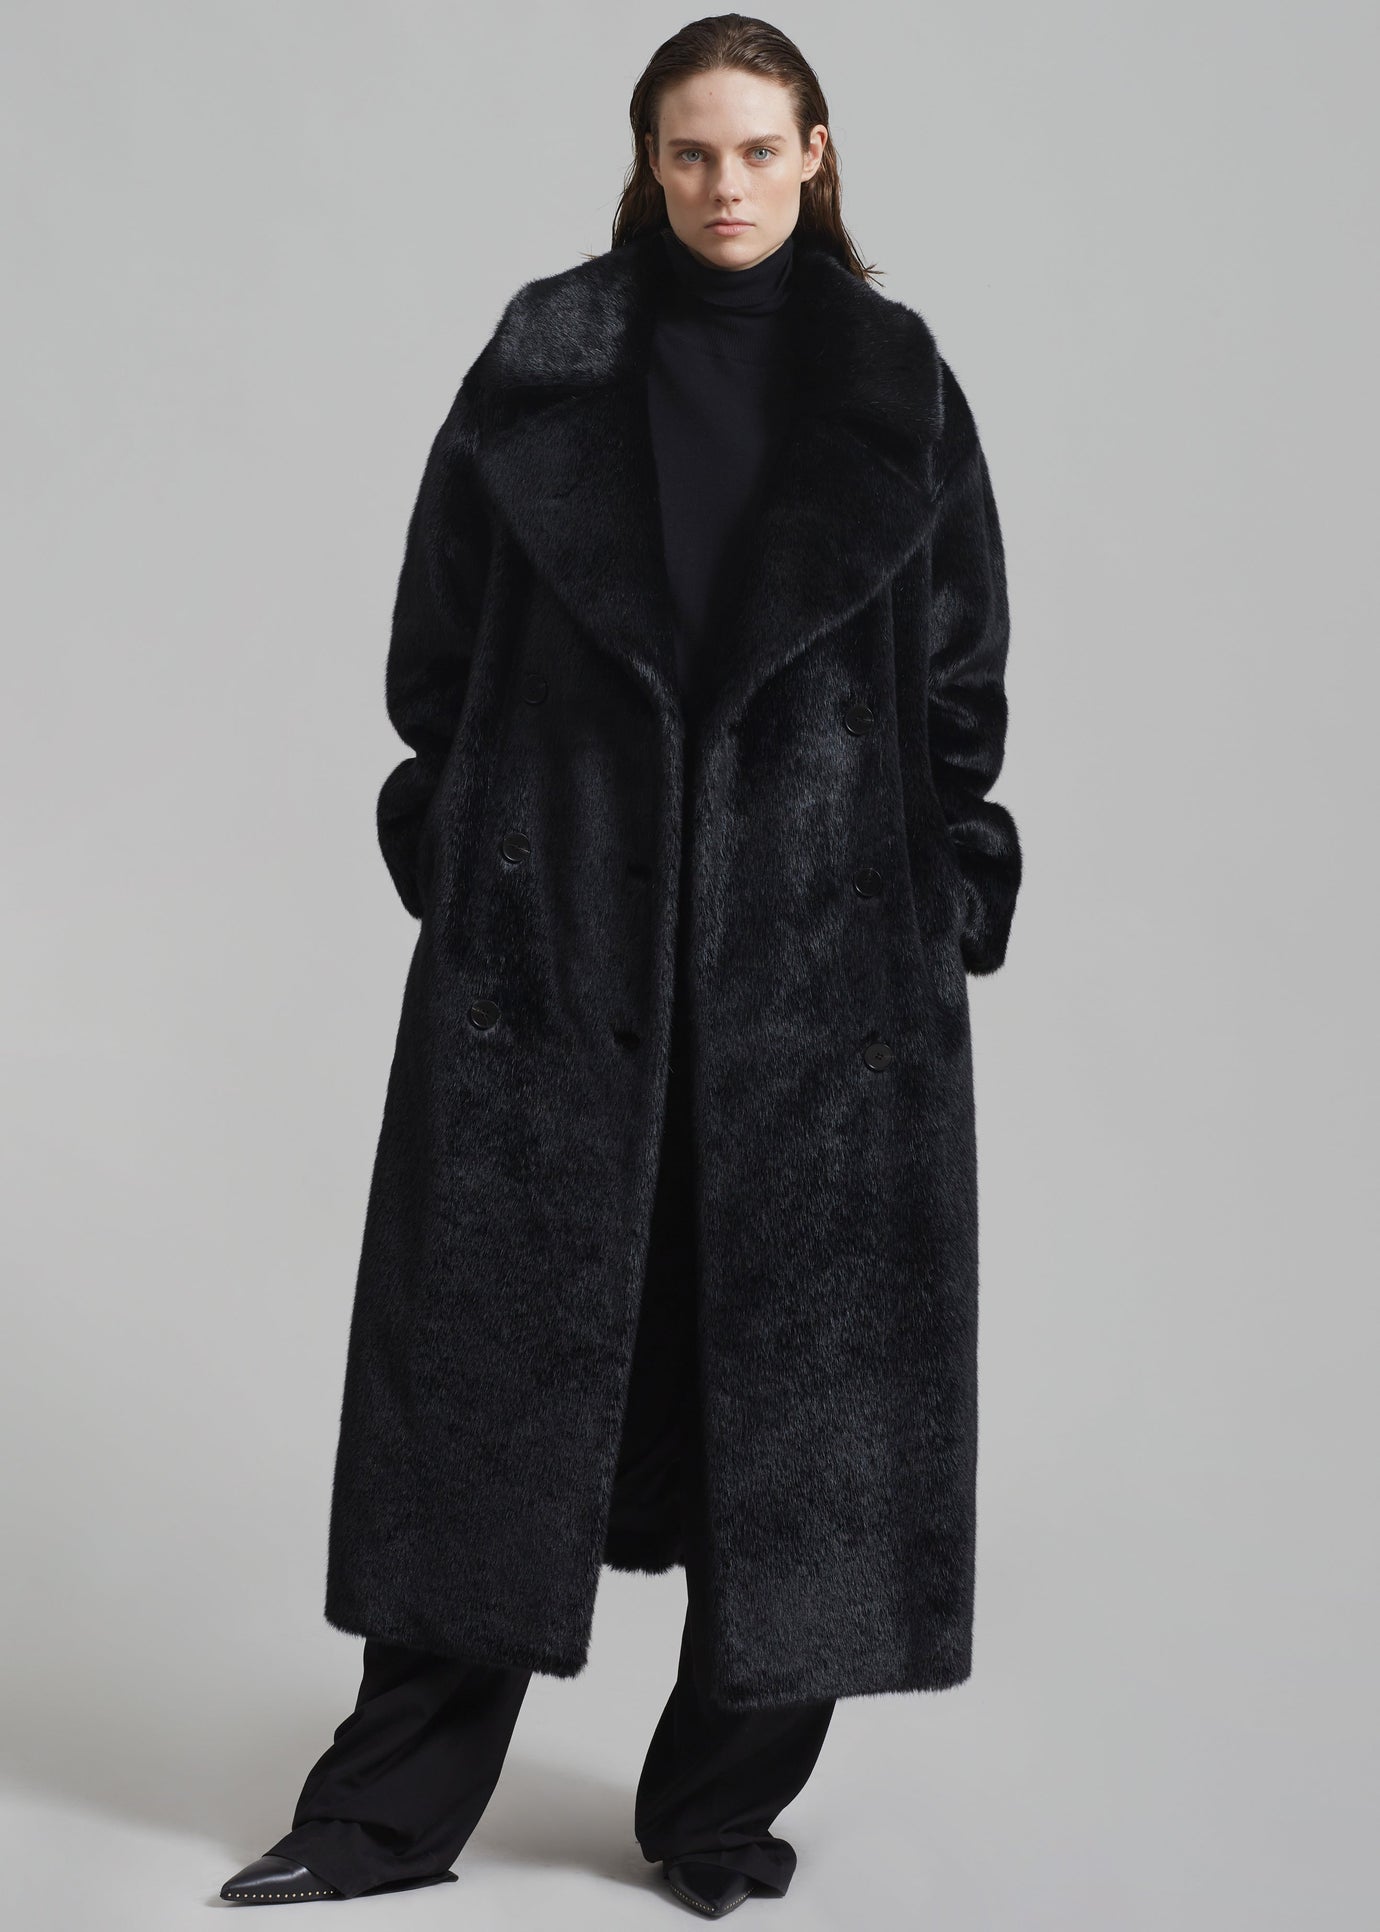 Joni Faux Fur Coat - Black